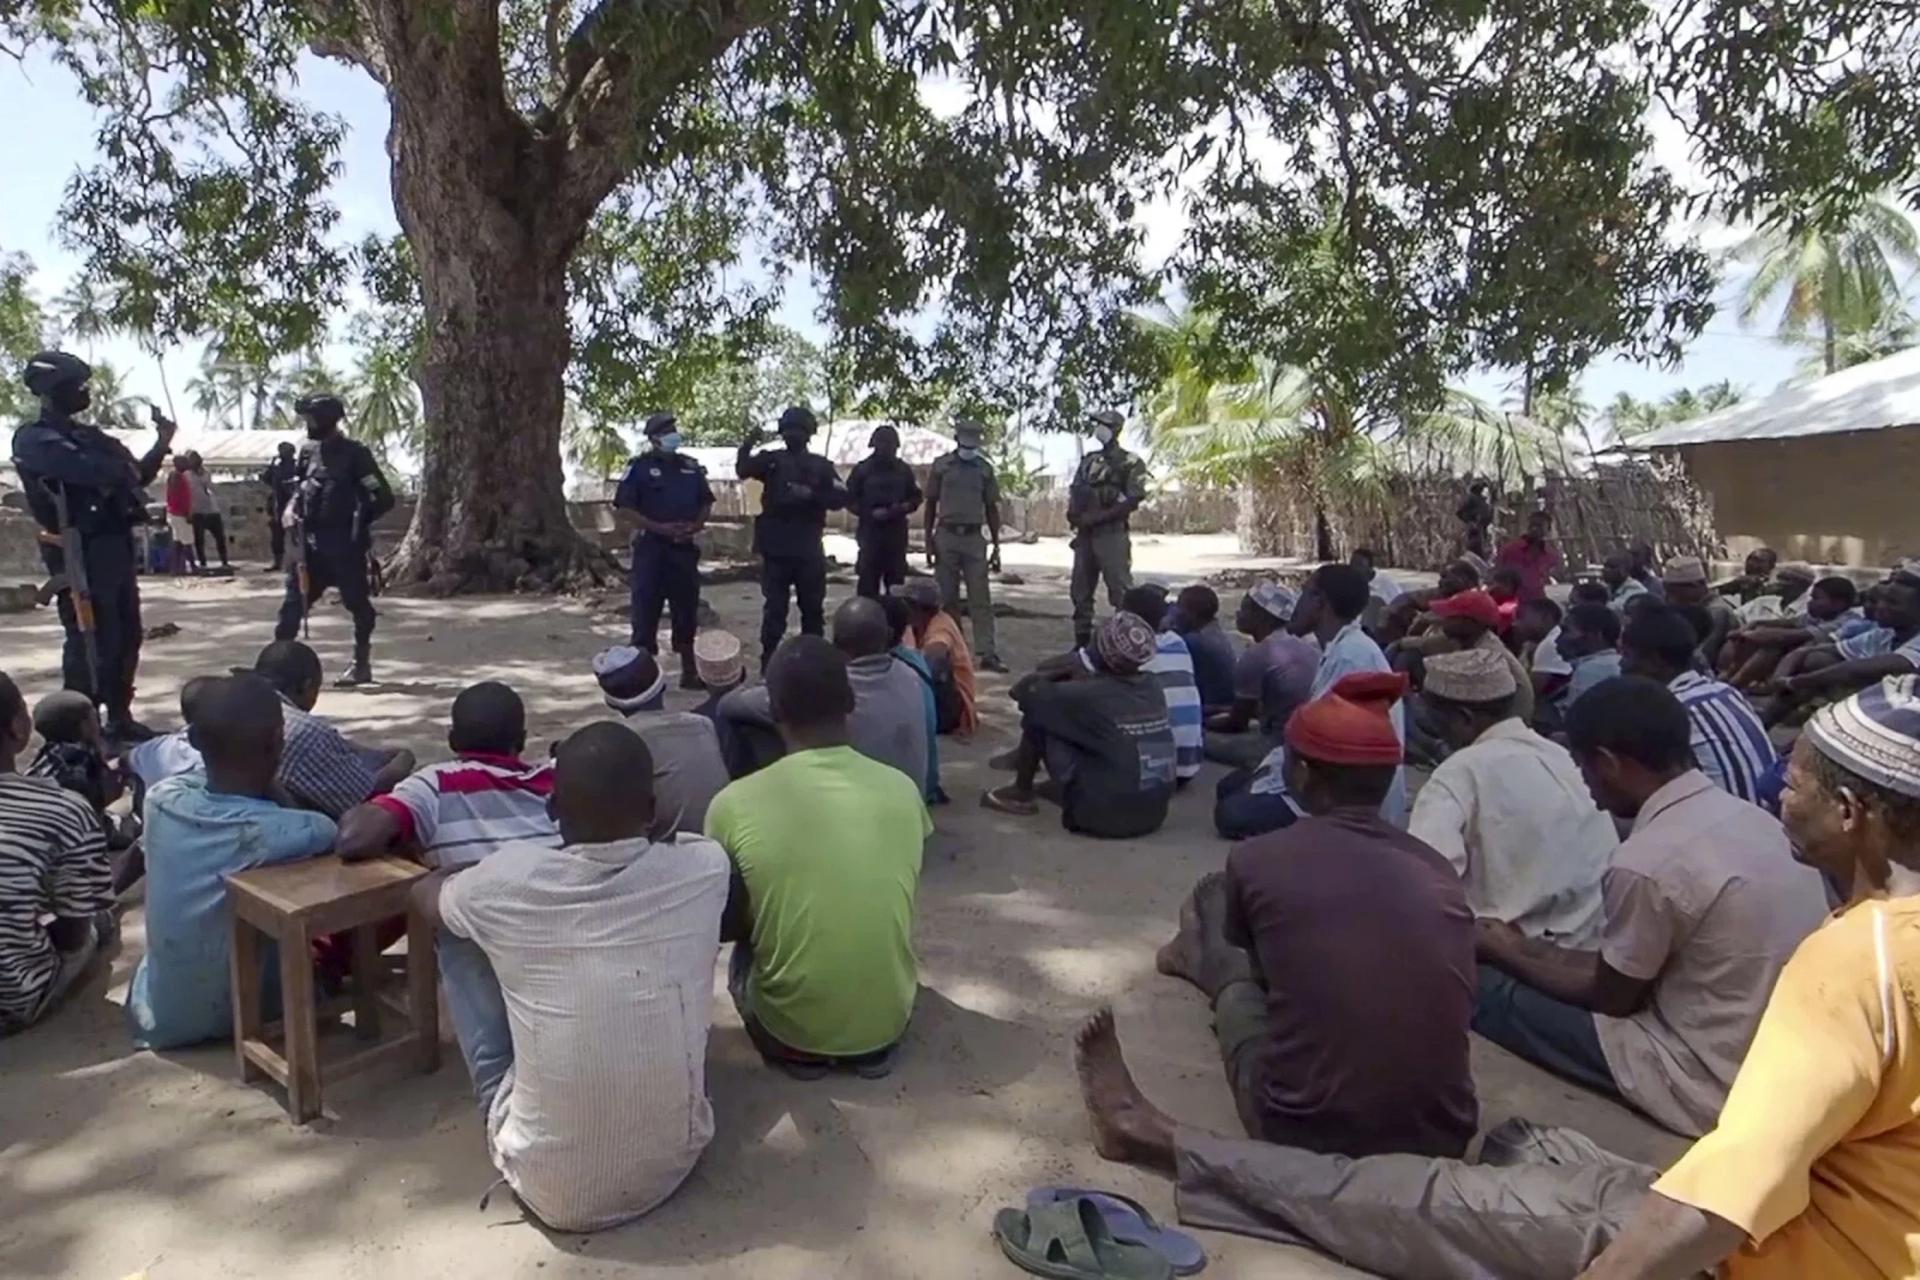 Mozambique: Continued attacks amid a funding shortfall worsens humanitarian crisis